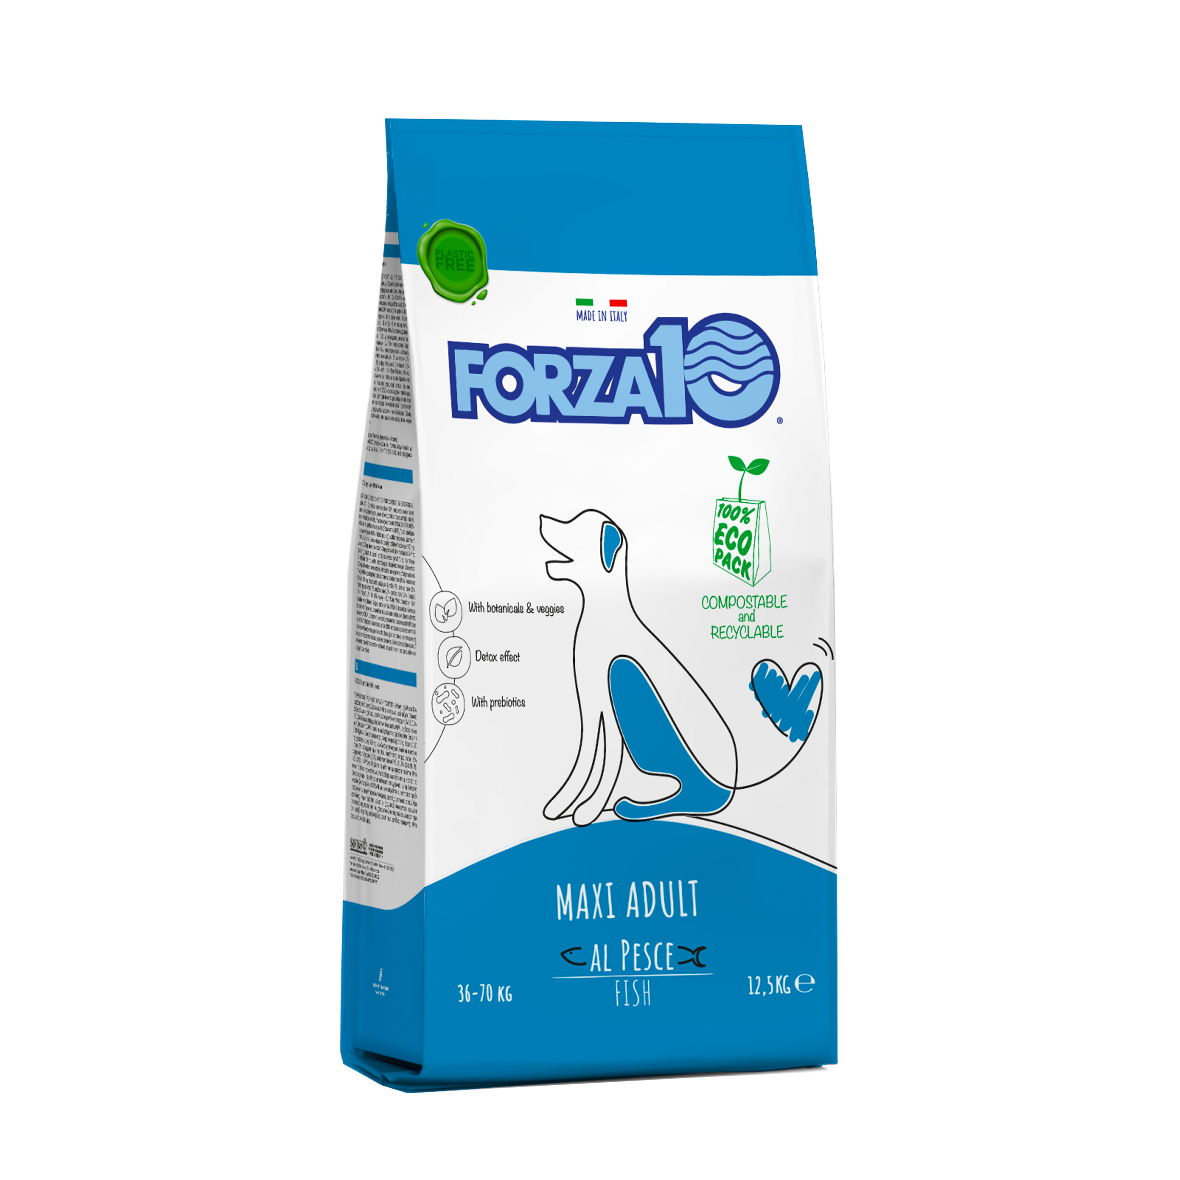 Forza10 Maintenance maxi adult - sabalansēta sausā ikdienas barība liela auguma suņiem.